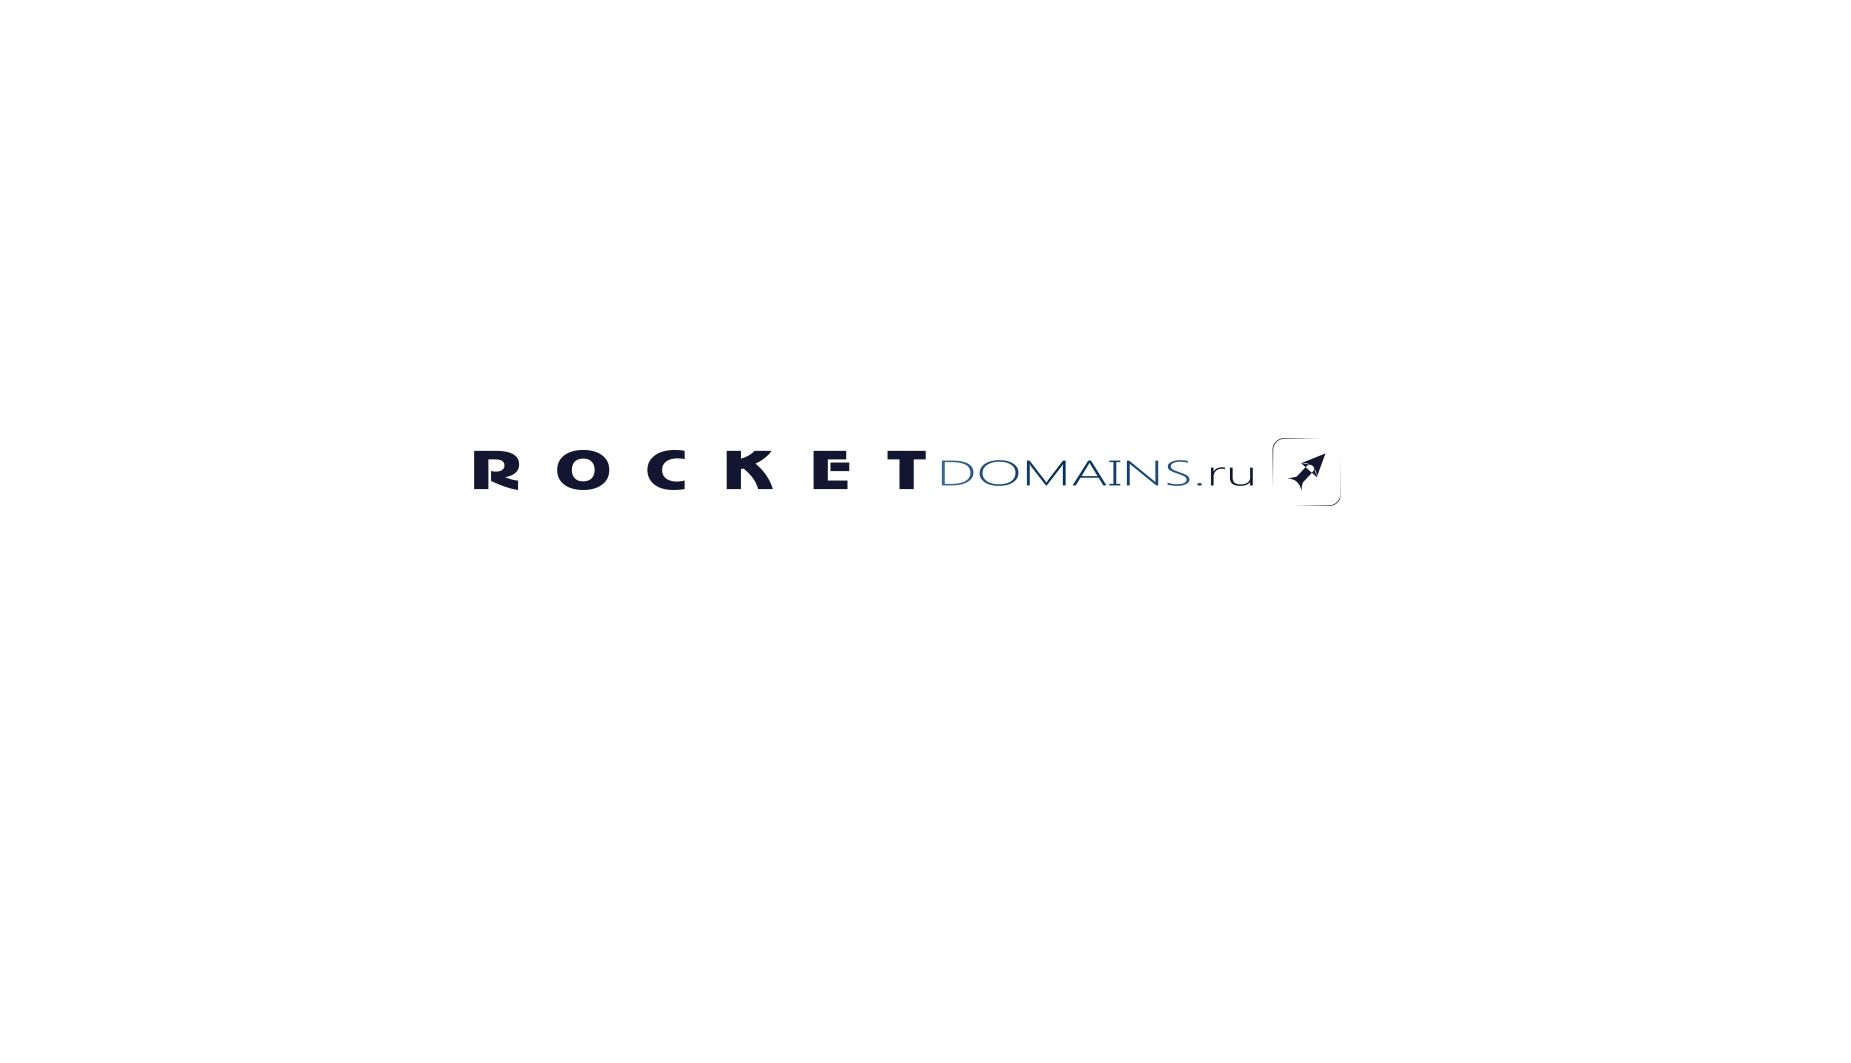 Логотип для регистратора RocketDomains.ru - дизайнер diaskidiruli